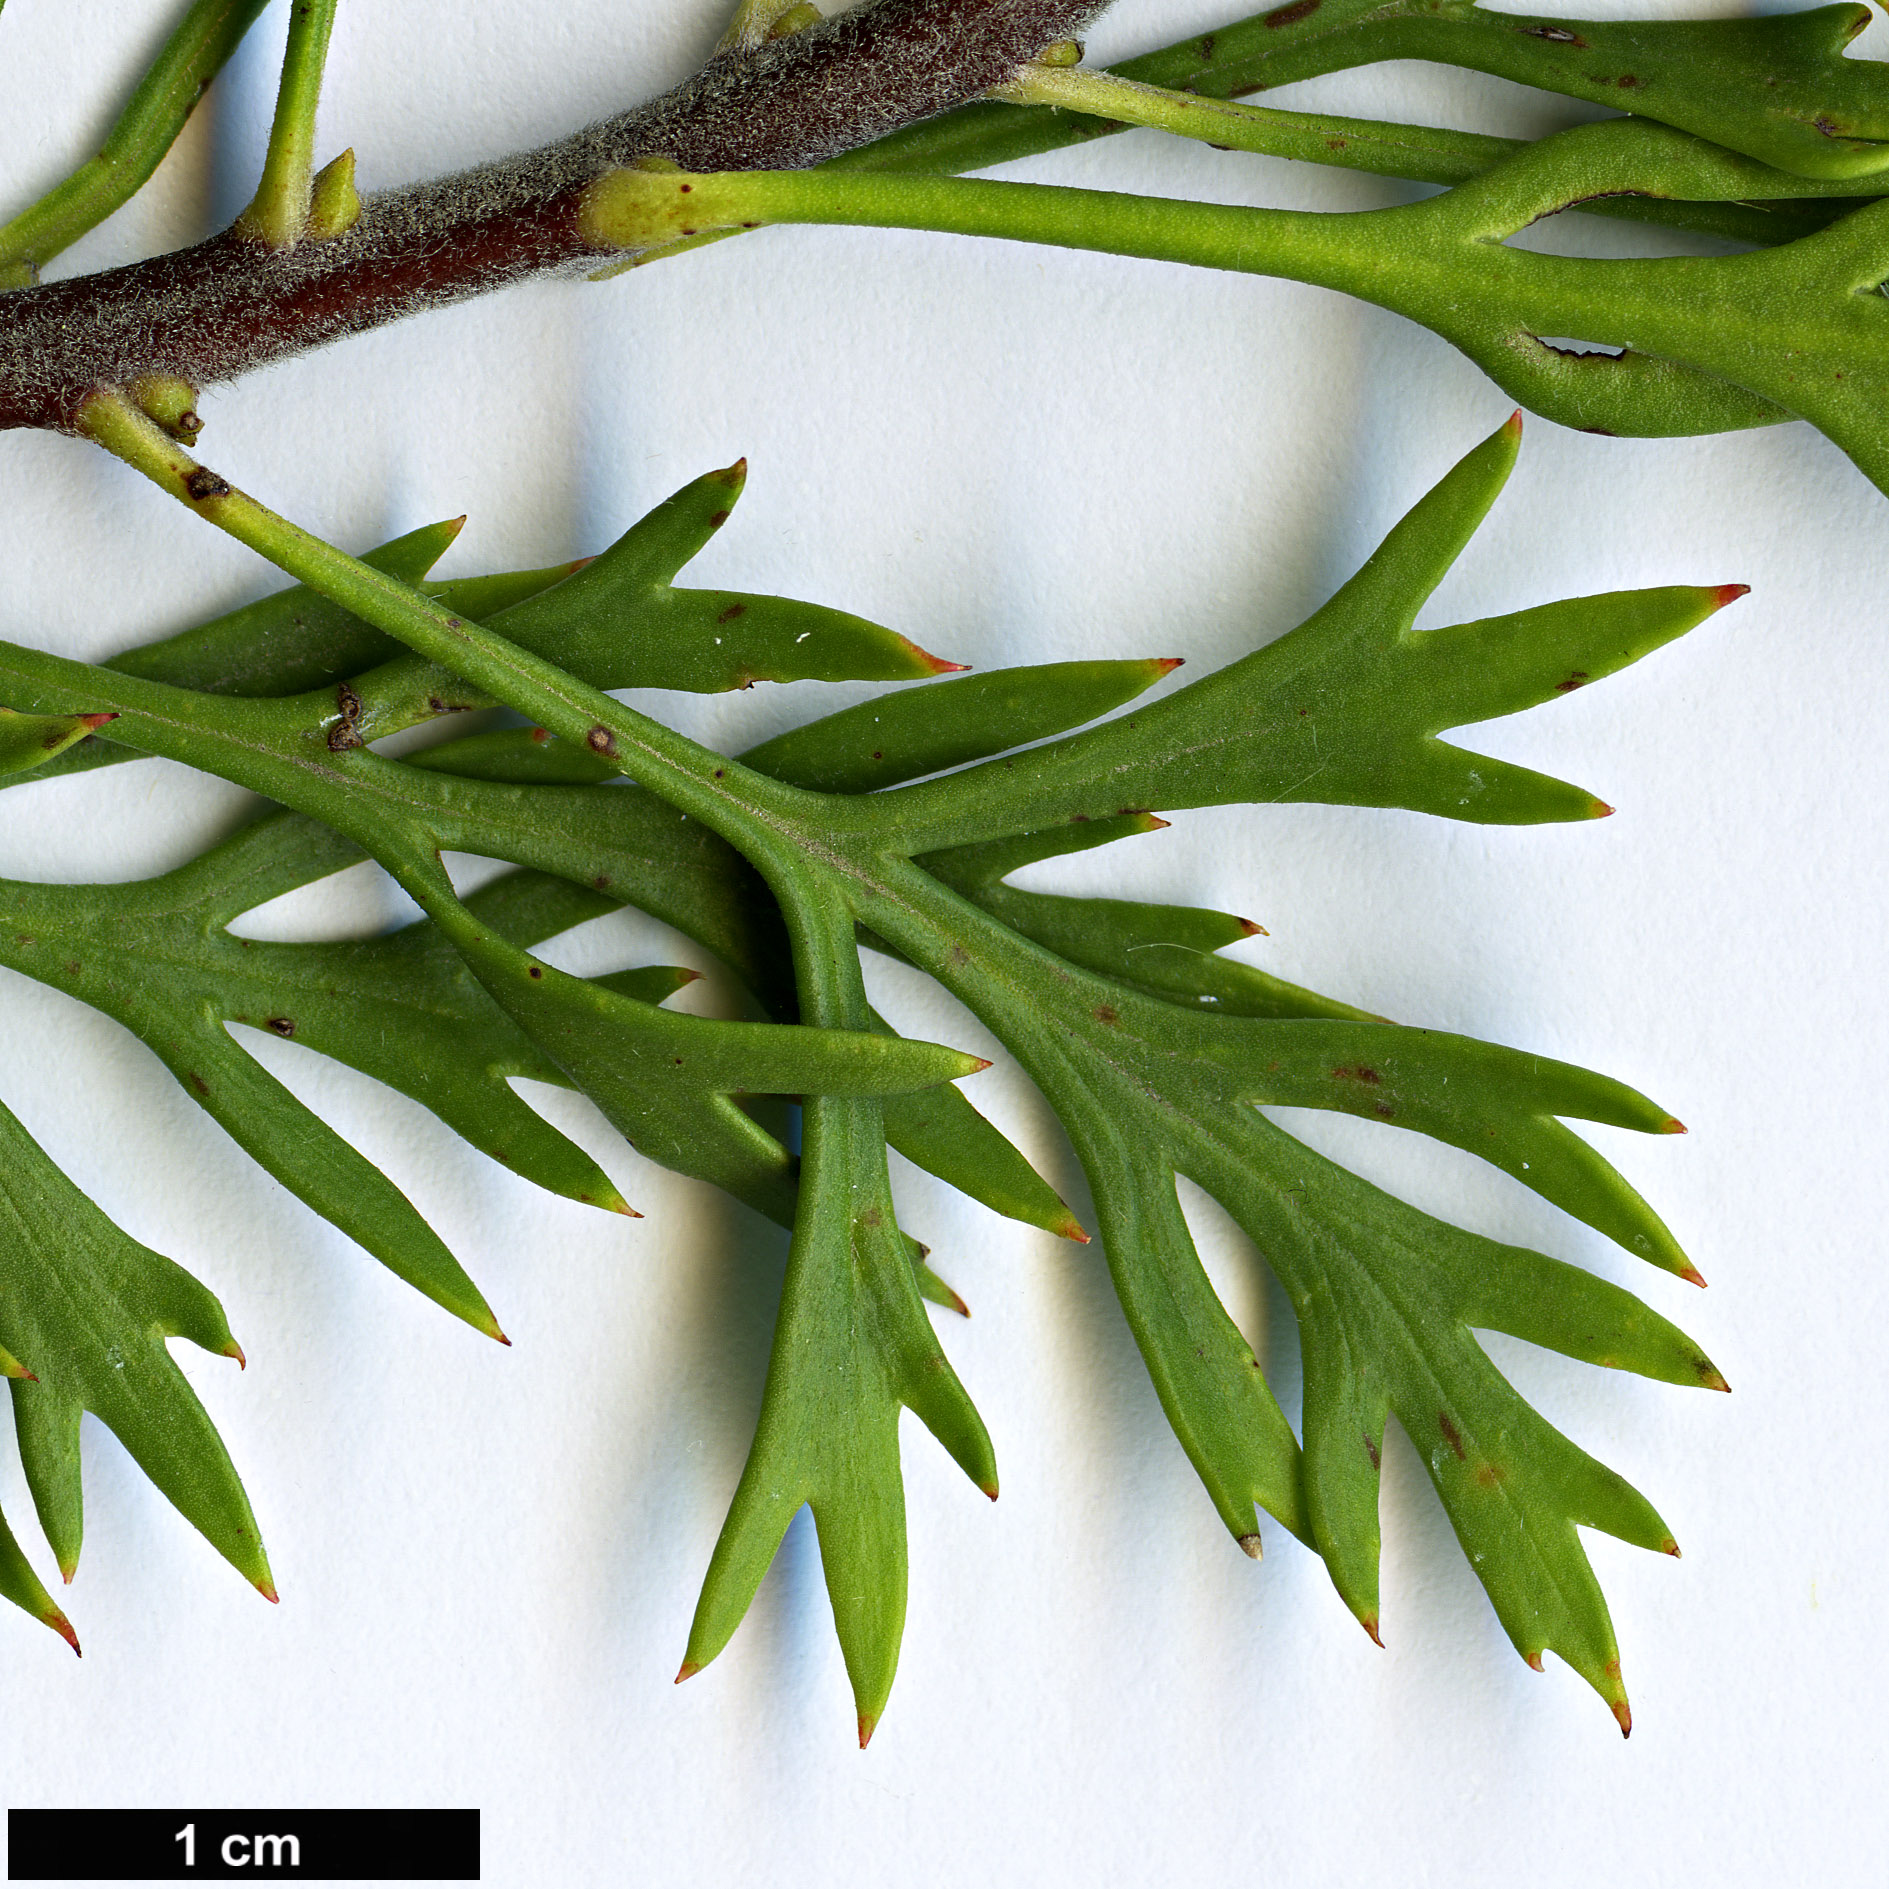 High resolution image: Family: Proteaceae - Genus: Isopogon - Taxon: anemonifolius